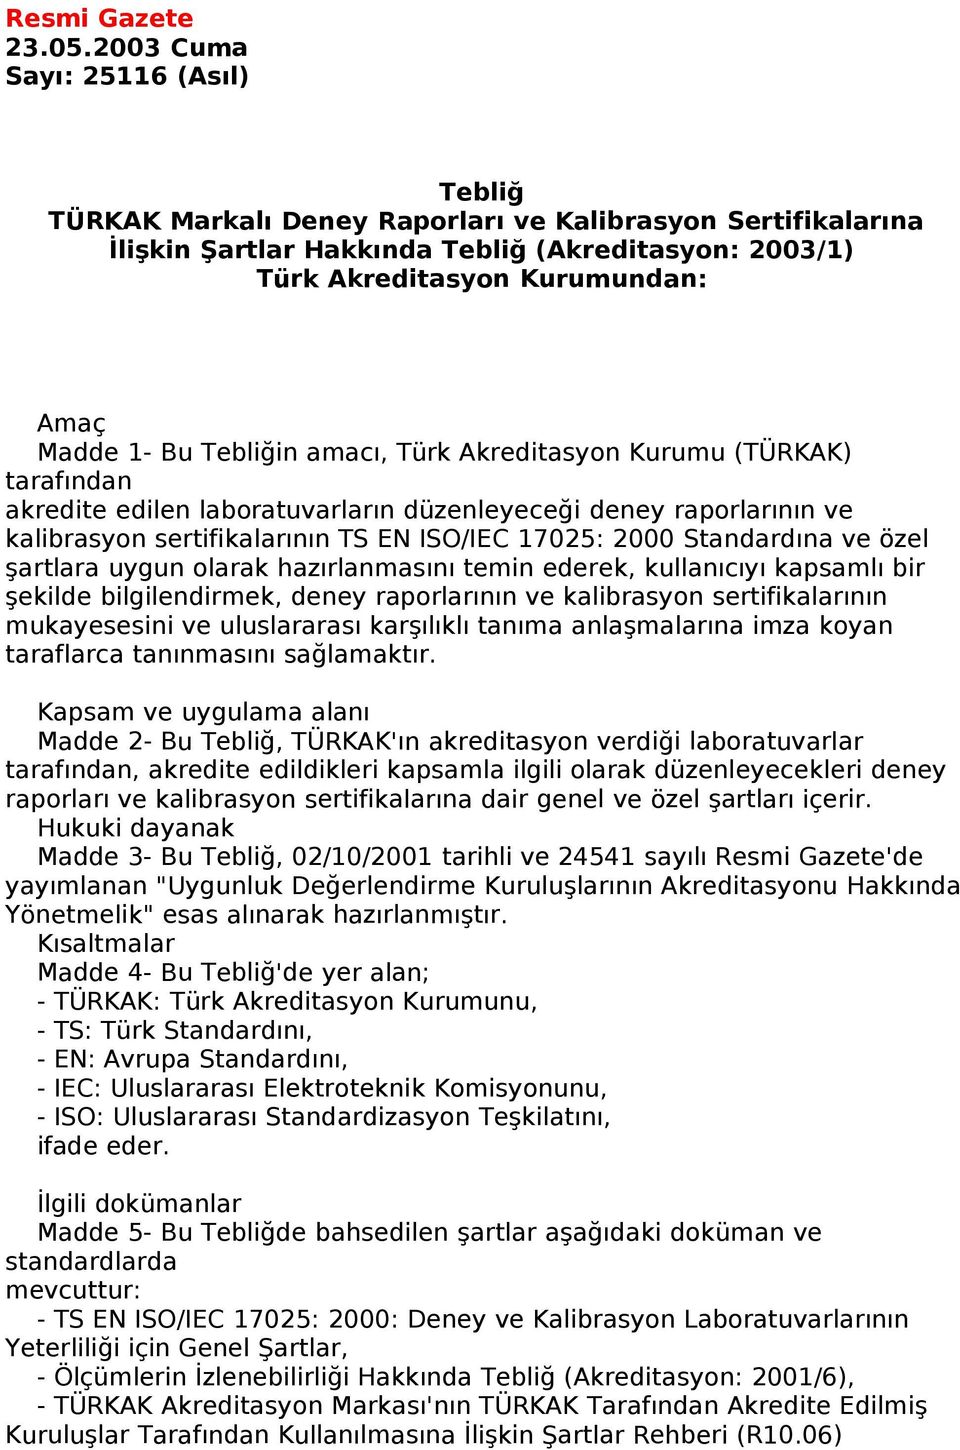 Tebliğin amacı, Türk Akreditasyon Kurumu (TÜRKAK) tarafından akredite edilen laboratuvarların düzenleyeceği deney raporlarının ve kalibrasyon sertifikalarının TS EN ISO/IEC 17025: 2000 Standardına ve